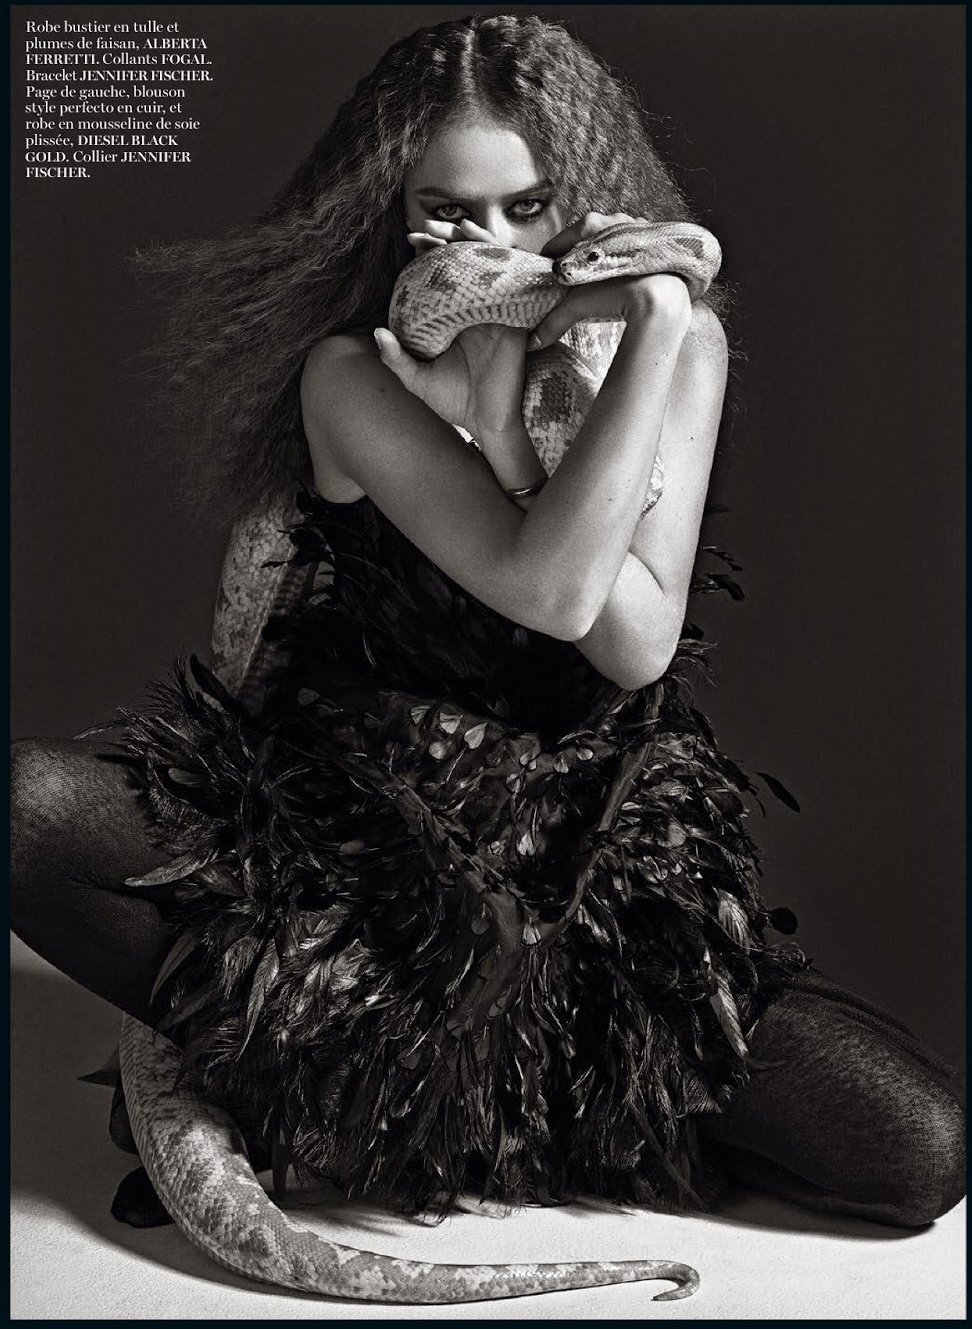 Raquel-Zimmermann-bt-Mario-Sorrenti-Vogue-Paris-August-2014-3.jpeg